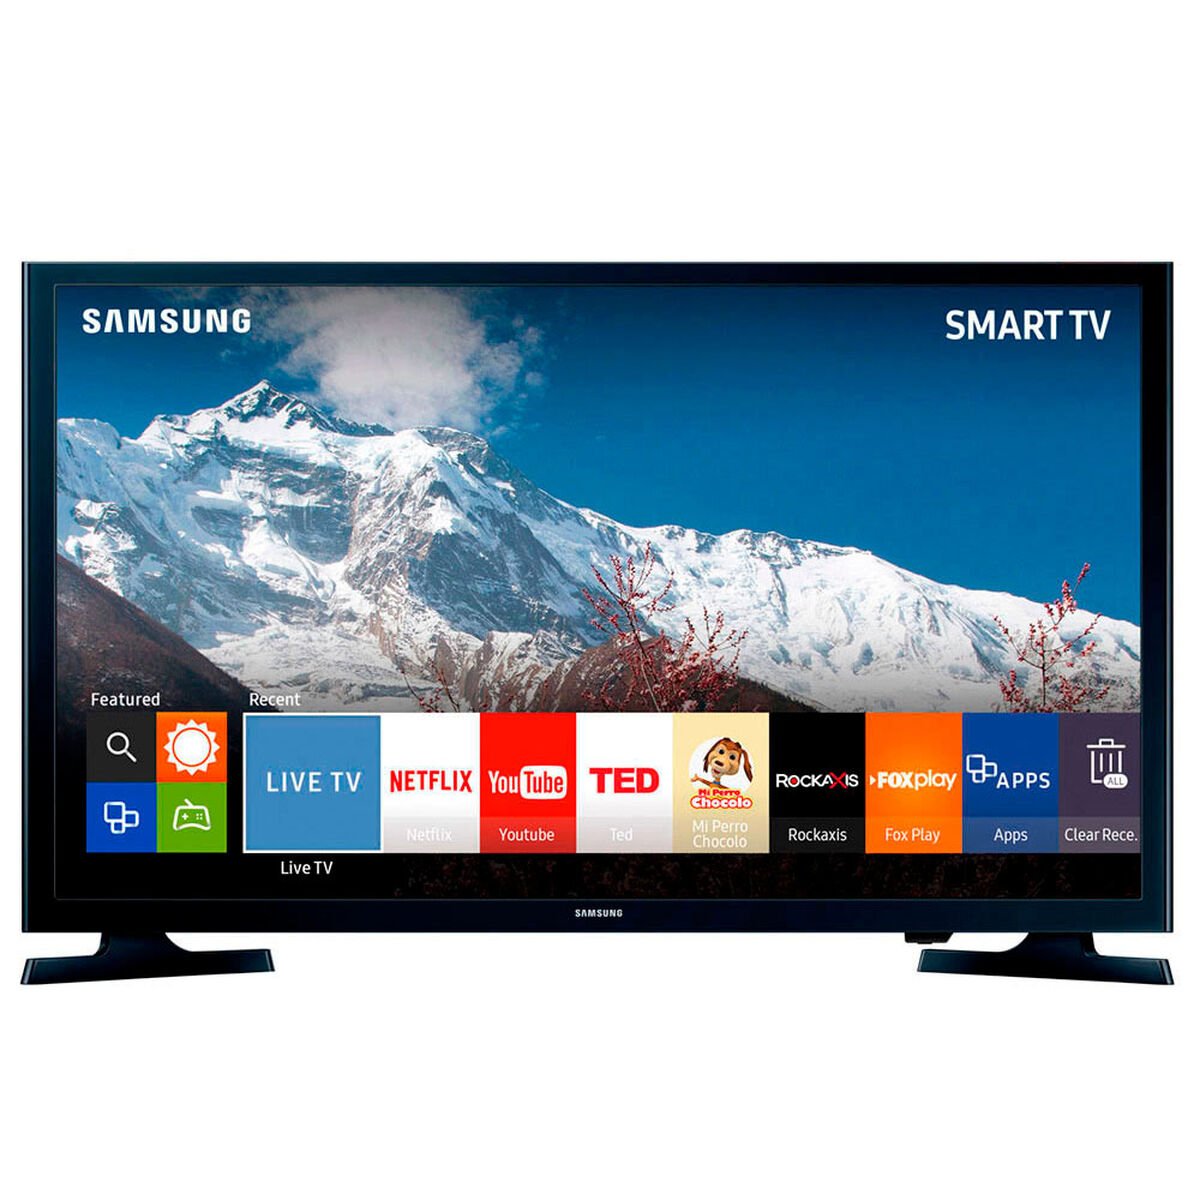 Смарт телевизор купить воронеж. Samsung led 32 Smart TV. Led телевизор Samsung ue40j5200. Samsung Smart TV 40. Самсунг led 40 смарт ТВ.